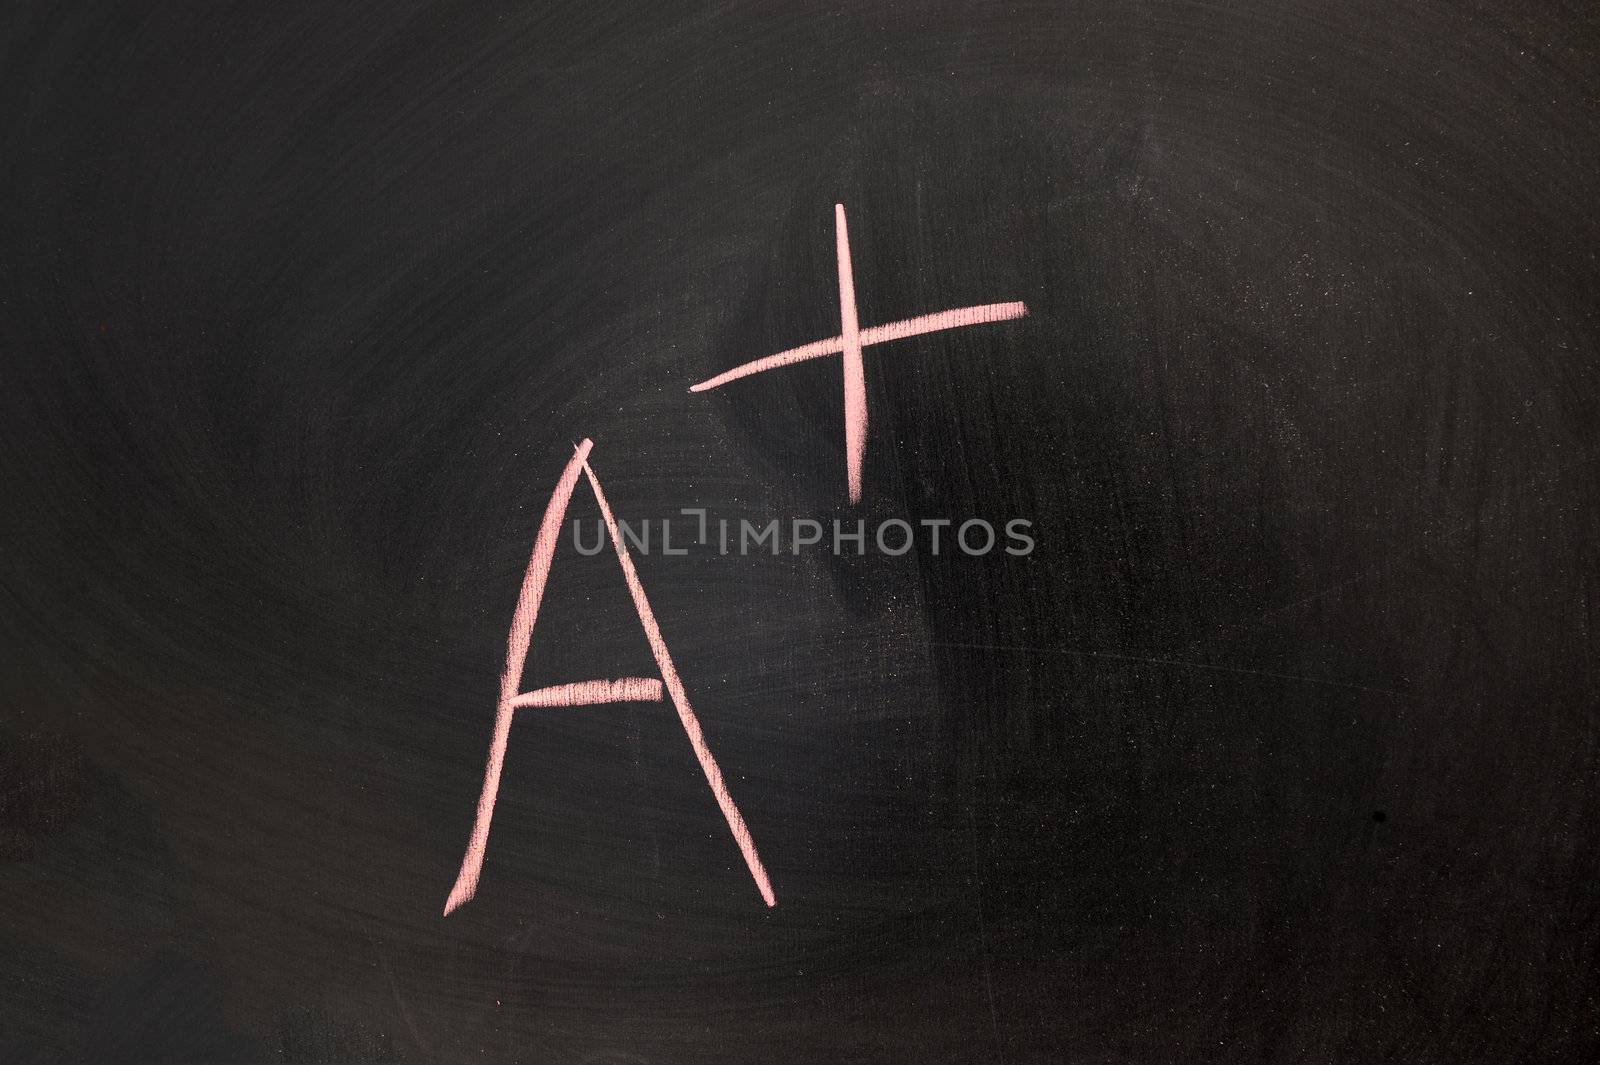 Chalk drawing - the score of A+ written on chalkboard